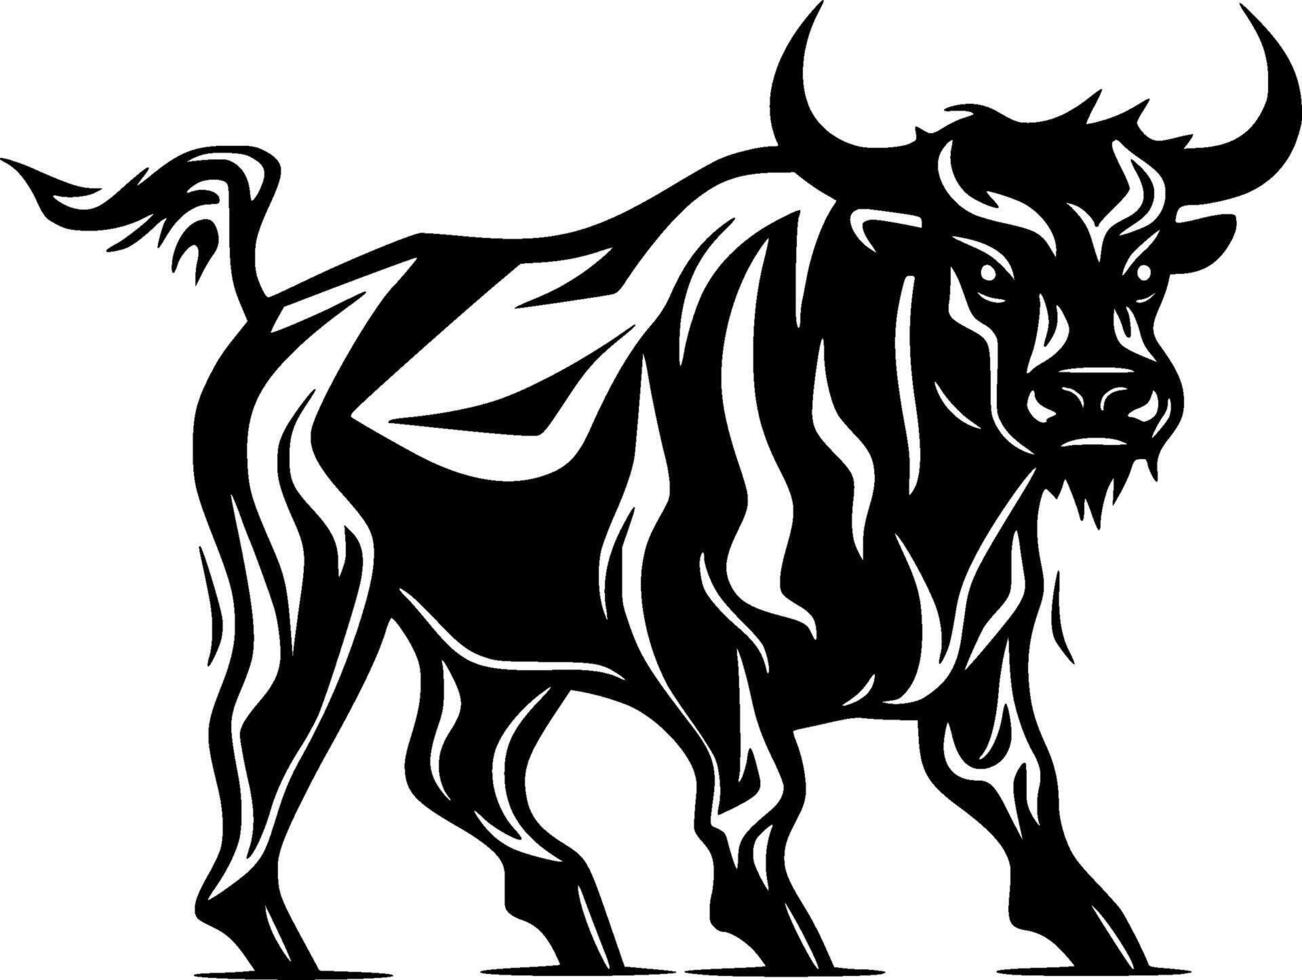 touro - Preto e branco isolado ícone - ilustração vetor